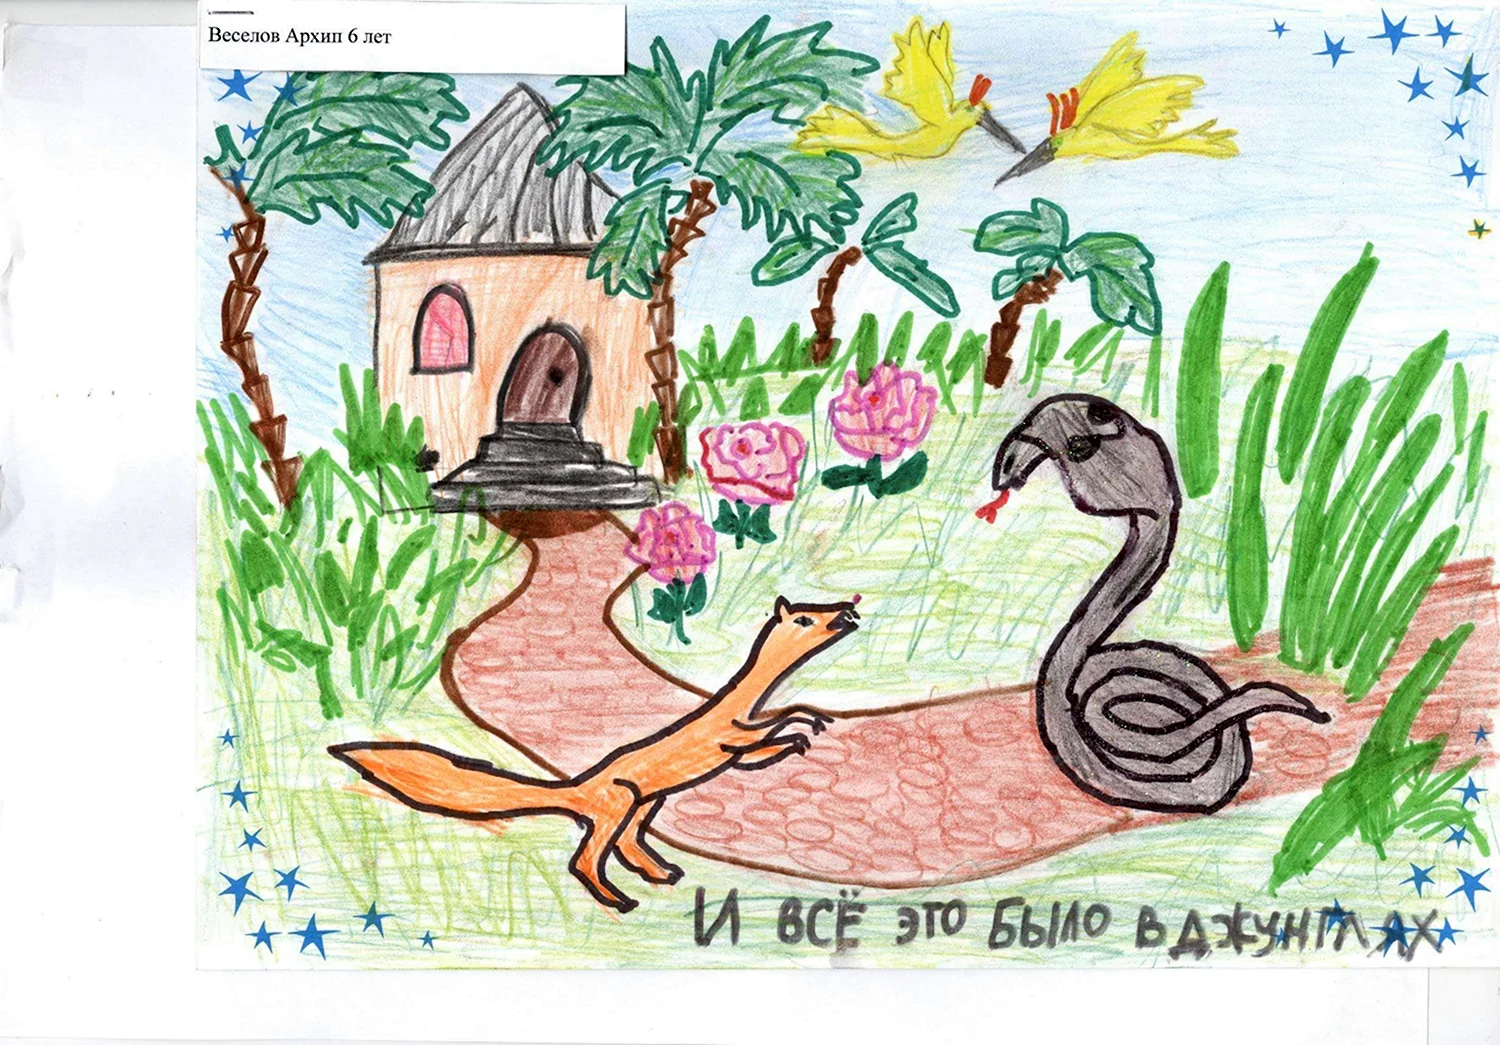 Рики тики читательский дневник. Иллюстрация к сказке Рикки Тикки Тави. Рисунок на тему Рикки Тикки Тави. Рикки Тикки Тави рисунок для детей. Рики Тики Тави рисунок.